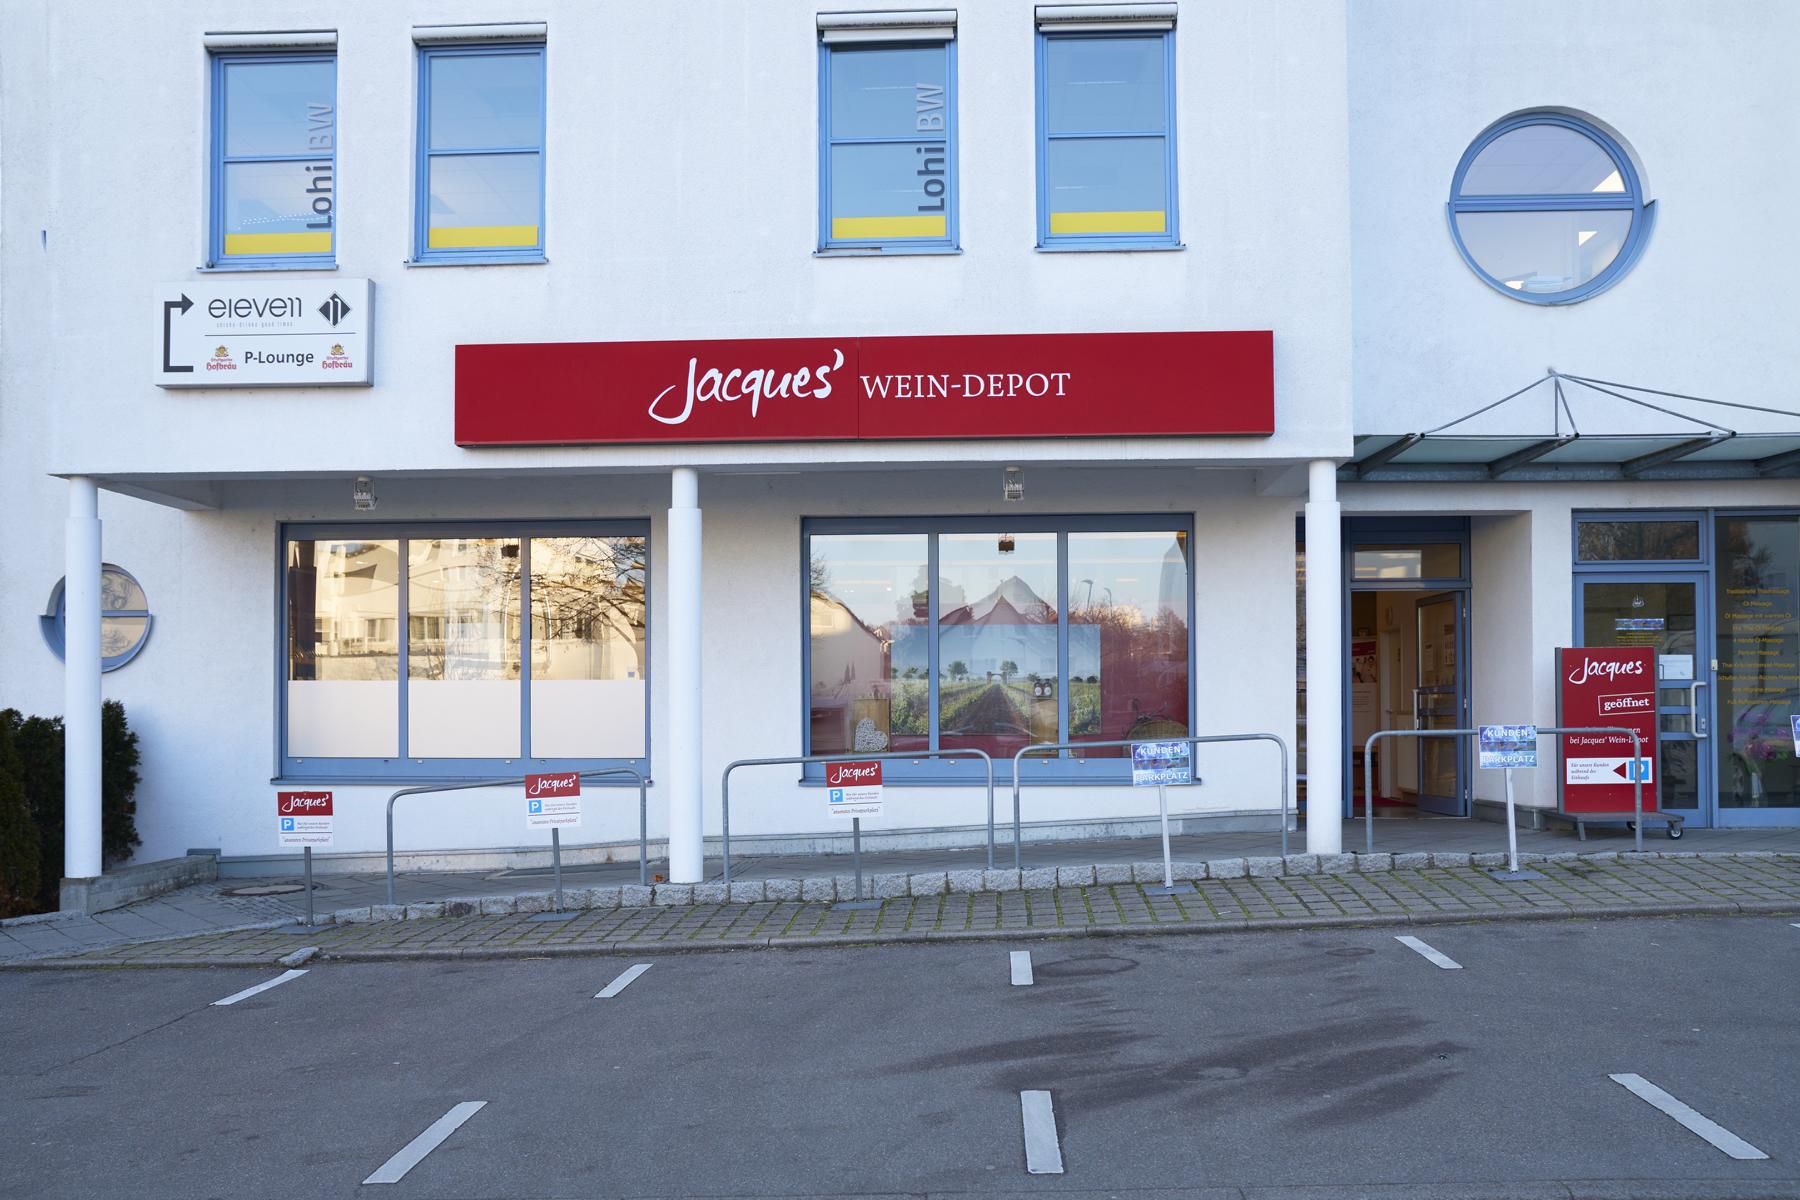 Bilder Jacques’ Wein-Depot Leinfelden-Echterdingen